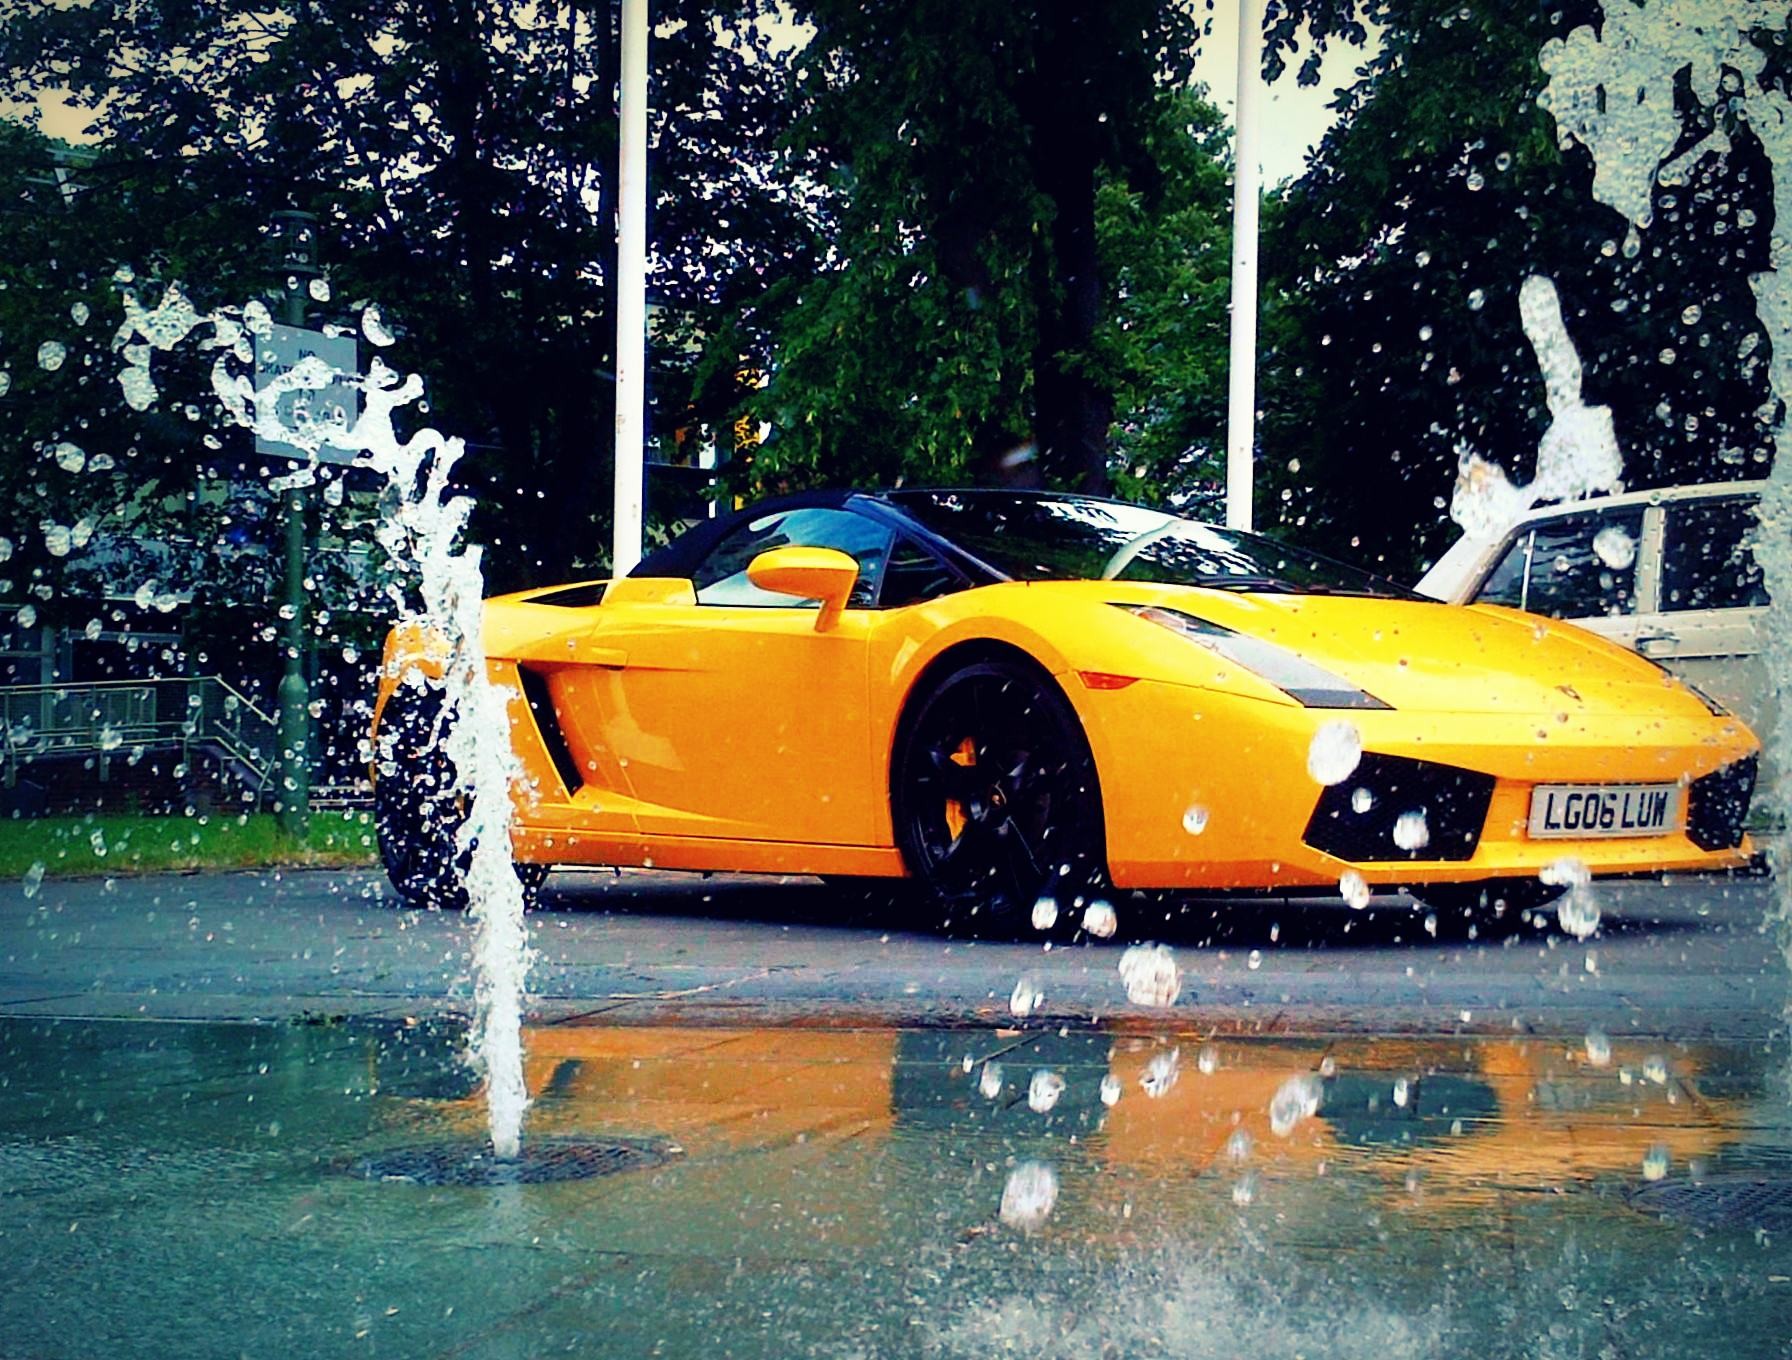 General 1792x1360 car vehicle Lamborghini yellow cars fountain